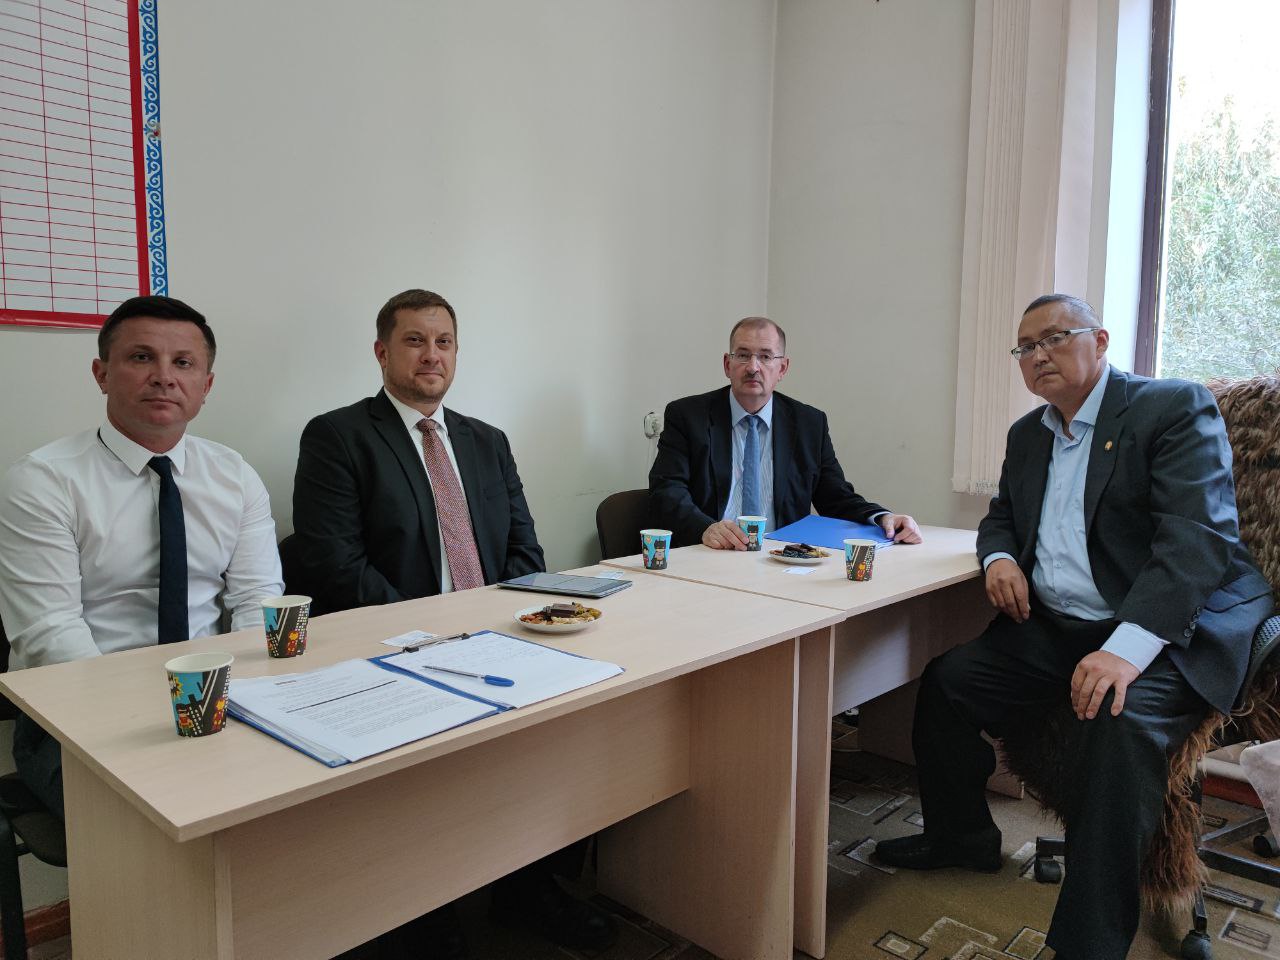 (Рус) Сотрудники Таласского представительства НЦПП КР провели рабочую встречу послом и главой Программного офиса ОБСЕ в Бишкеке